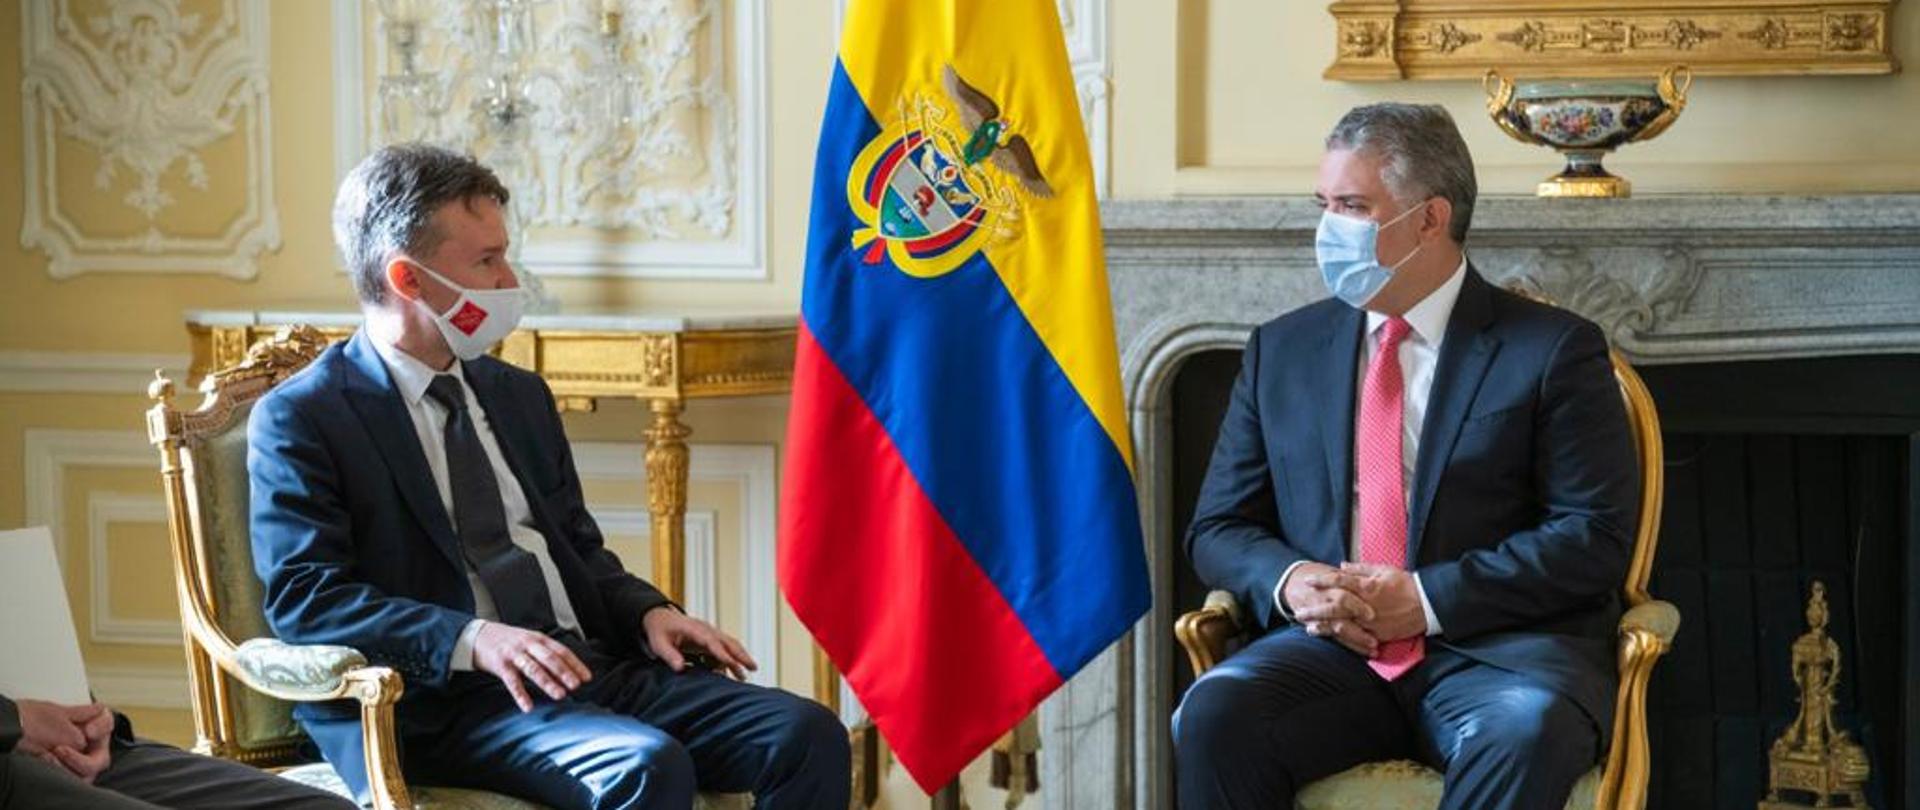 Ceremonia de presentación de cartas credenciales al Presidente de la República de Colombia Iván Duque Márquez por el Embajador de la República de Polonia Pawel Wozny.